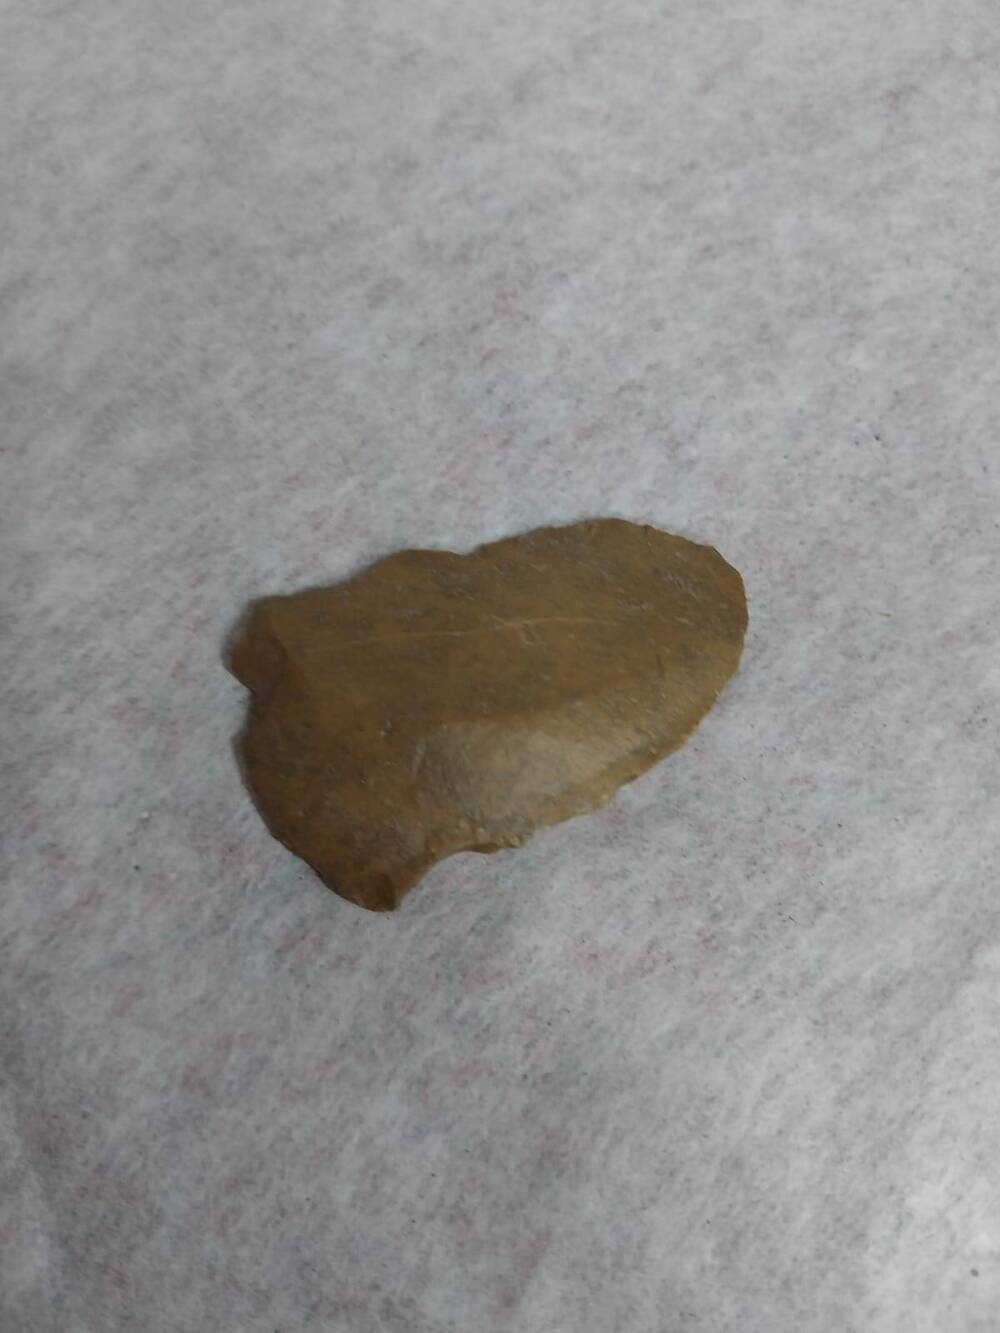 Скребок - каменное орудие труда, употреблялся в период палеолита и последующие эпохи, приблизительно 10 тыс. лет до н.э.